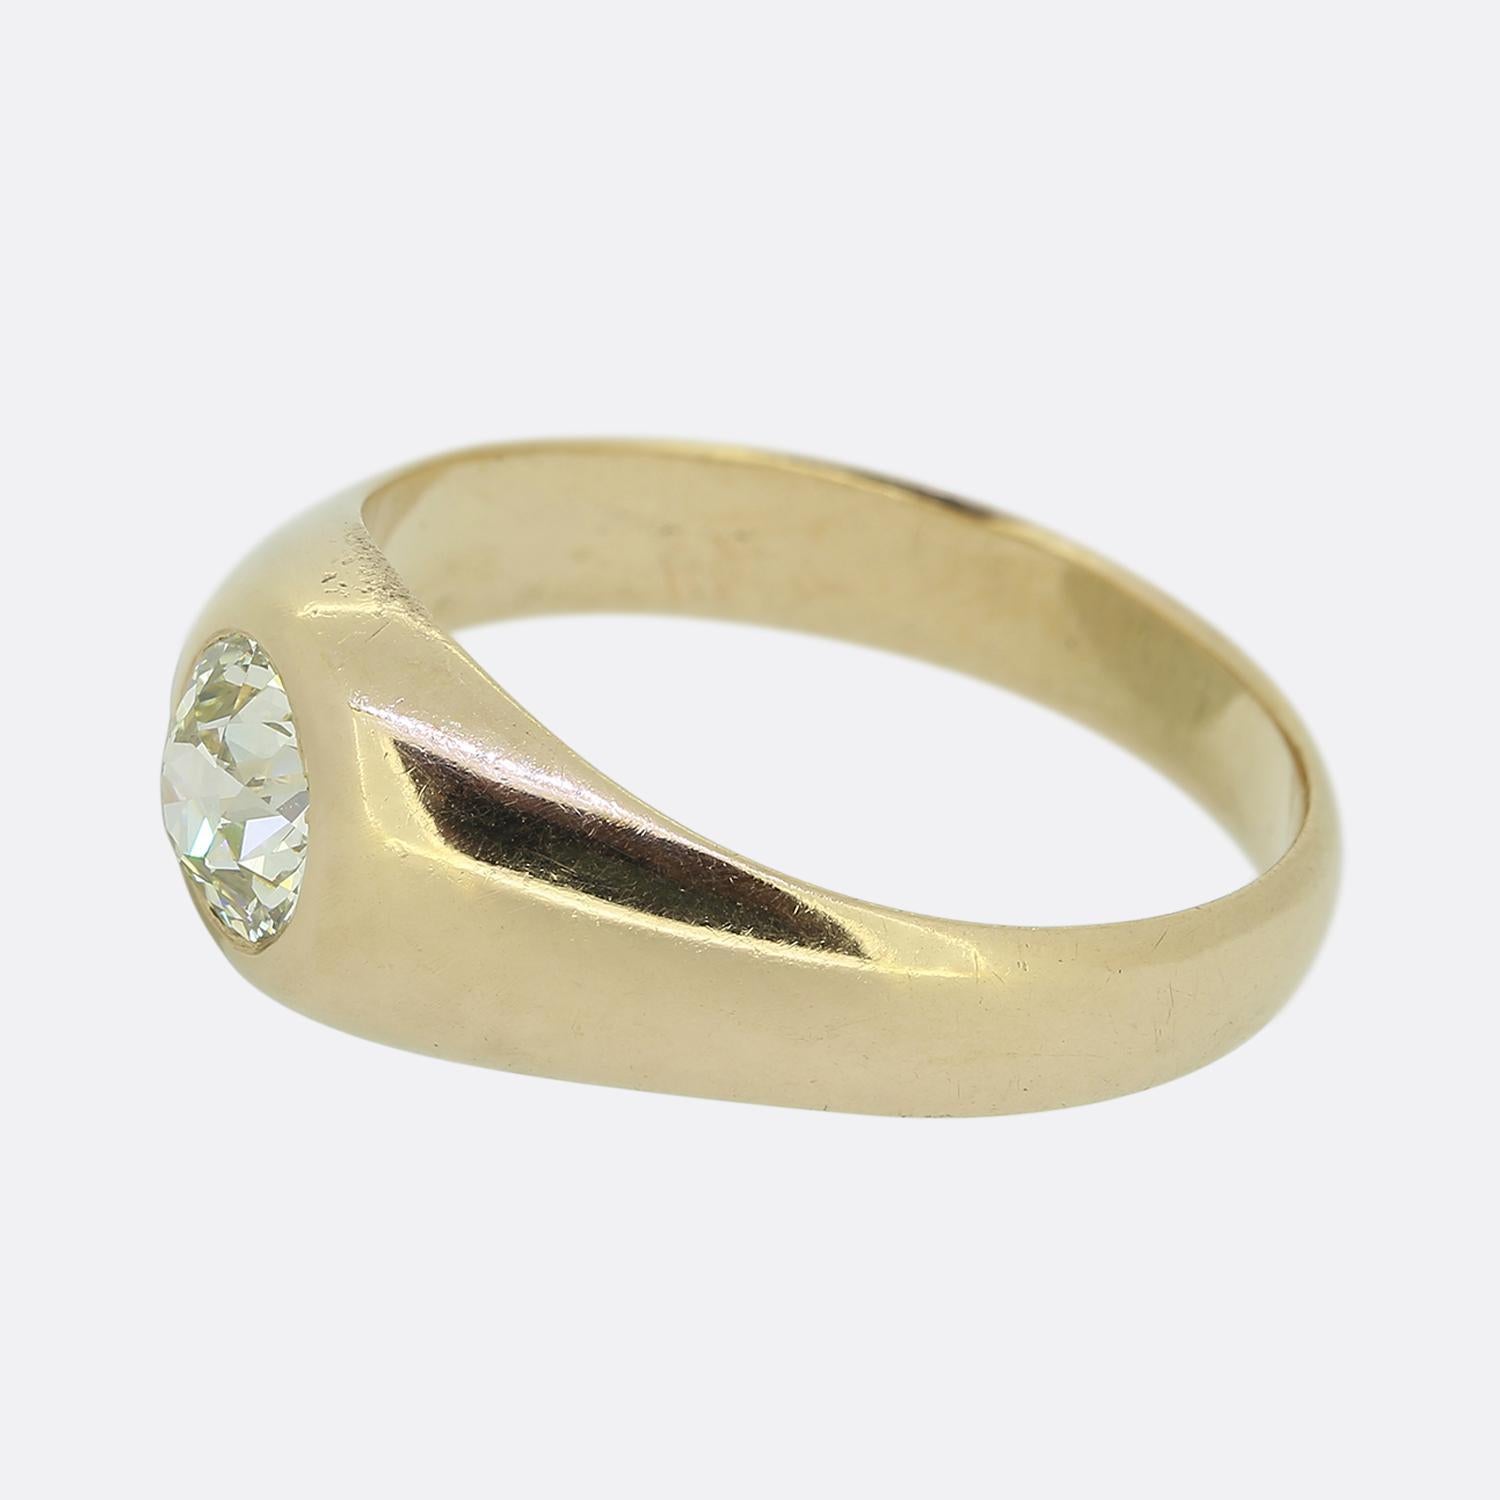 Hier haben wir einen klassisch gestylten Diamantring mit einem einzigen Stein. Dieses antike Stück wurde aus 18 Karat Gelbgold gefertigt und beherbergt einen einzelnen Diamanten im alten Minenschliff inmitten von breiten Schultern.

Zustand: